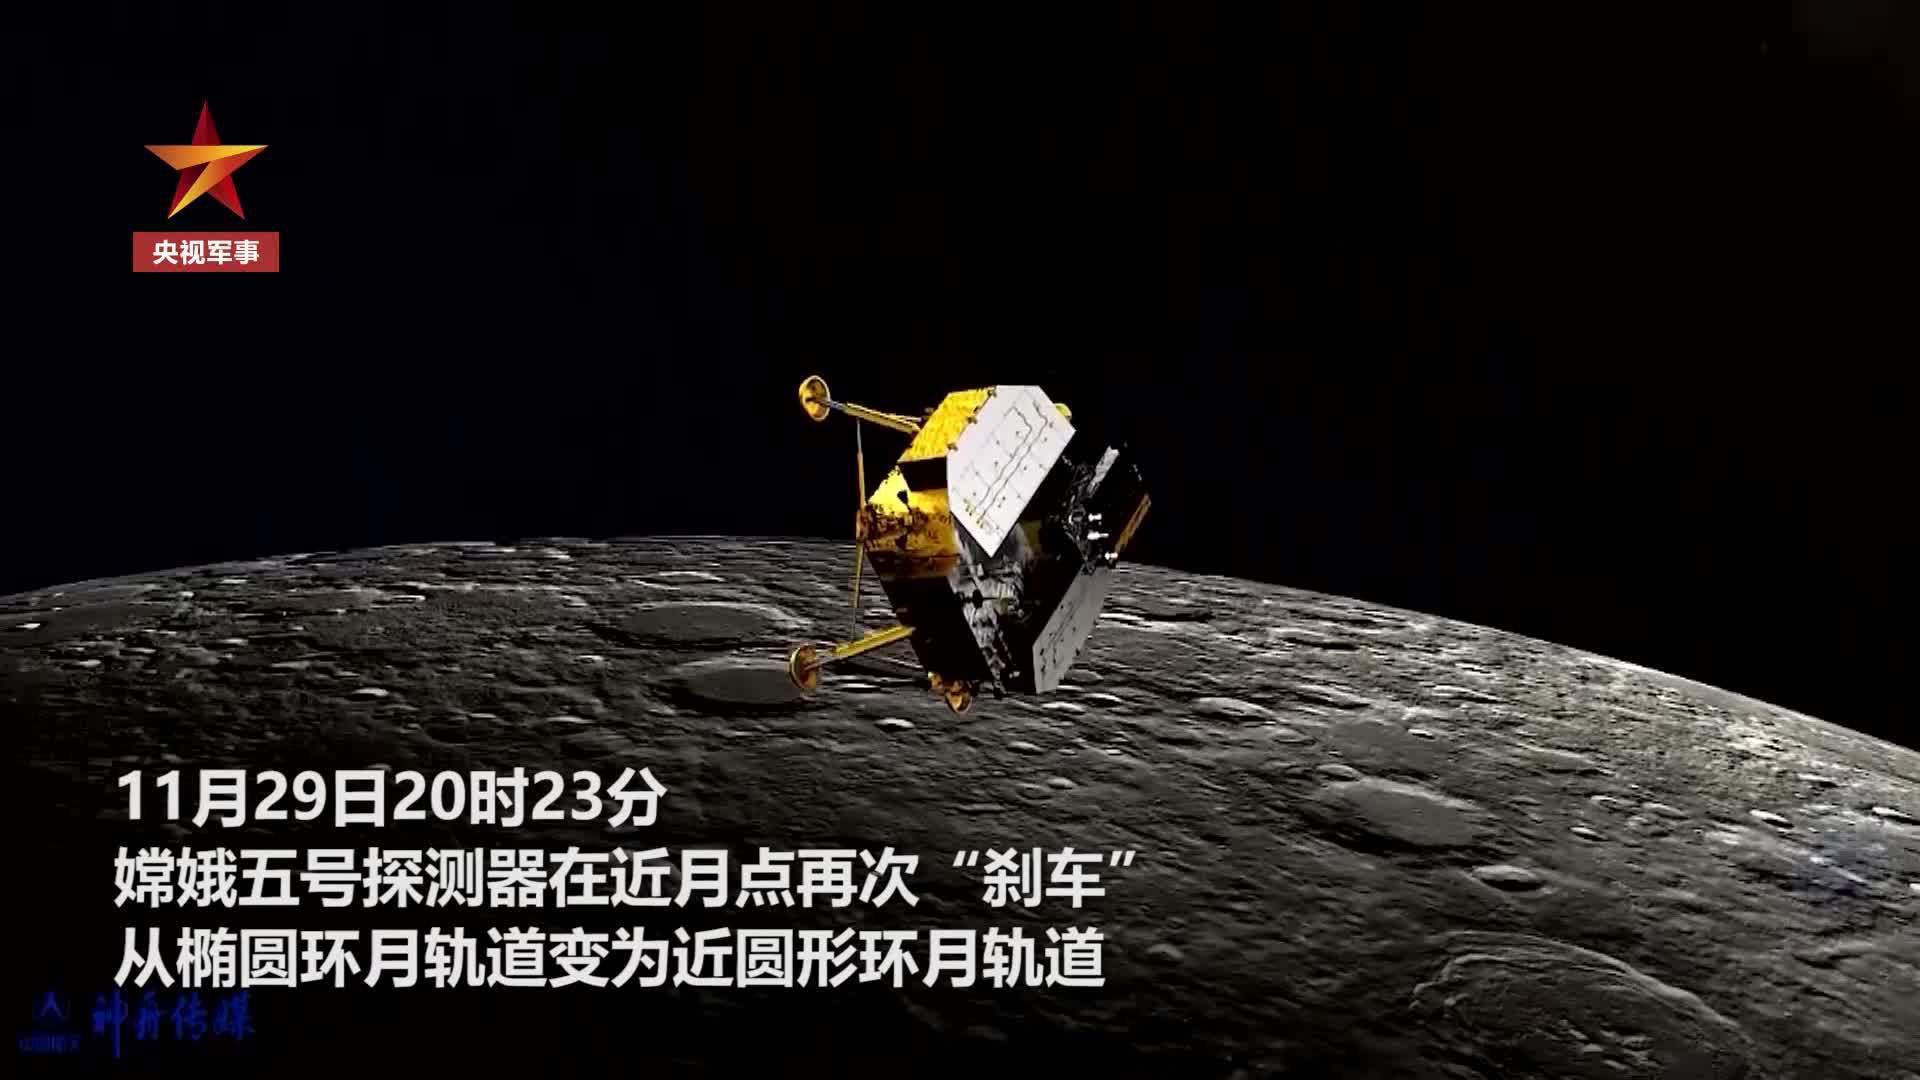 嫦娥五号进入近圆形环月轨道飞行